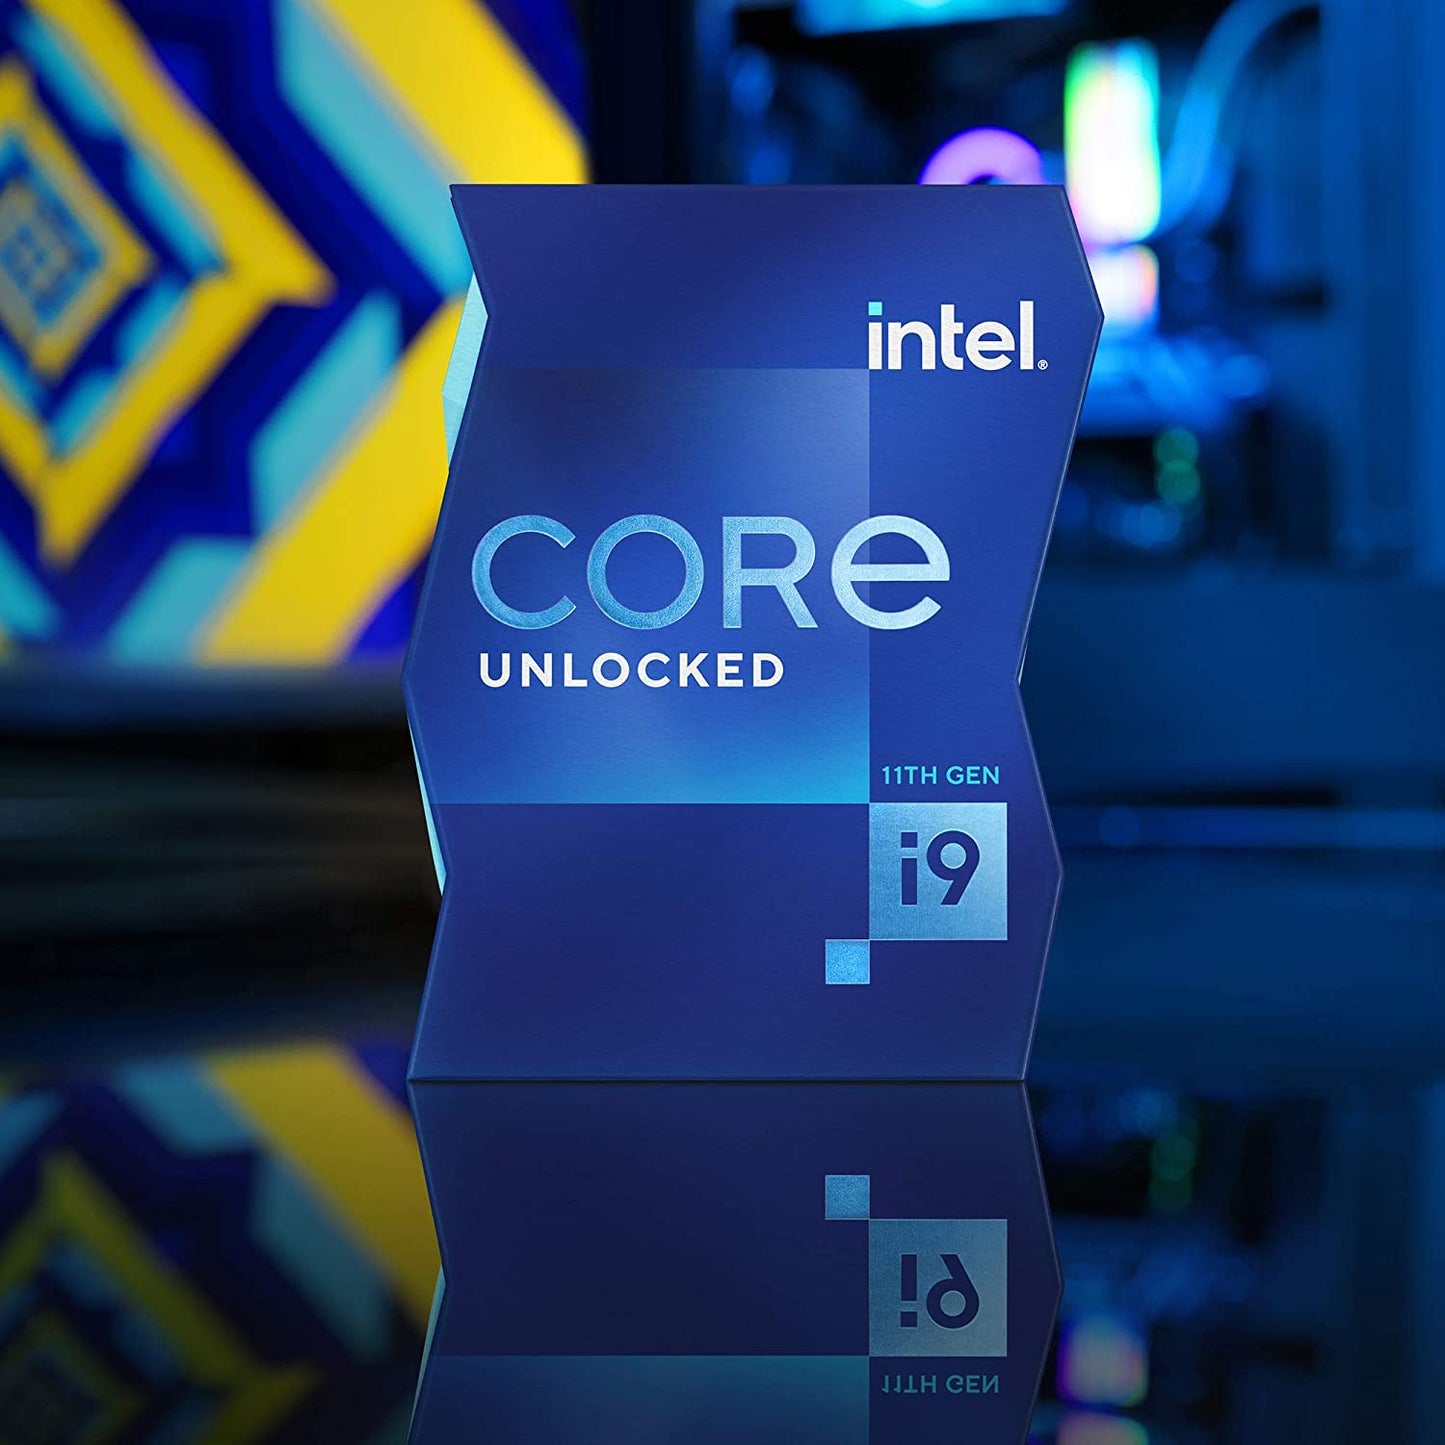 CPU-INTEL-CORE-(i9-10900K)-3.7